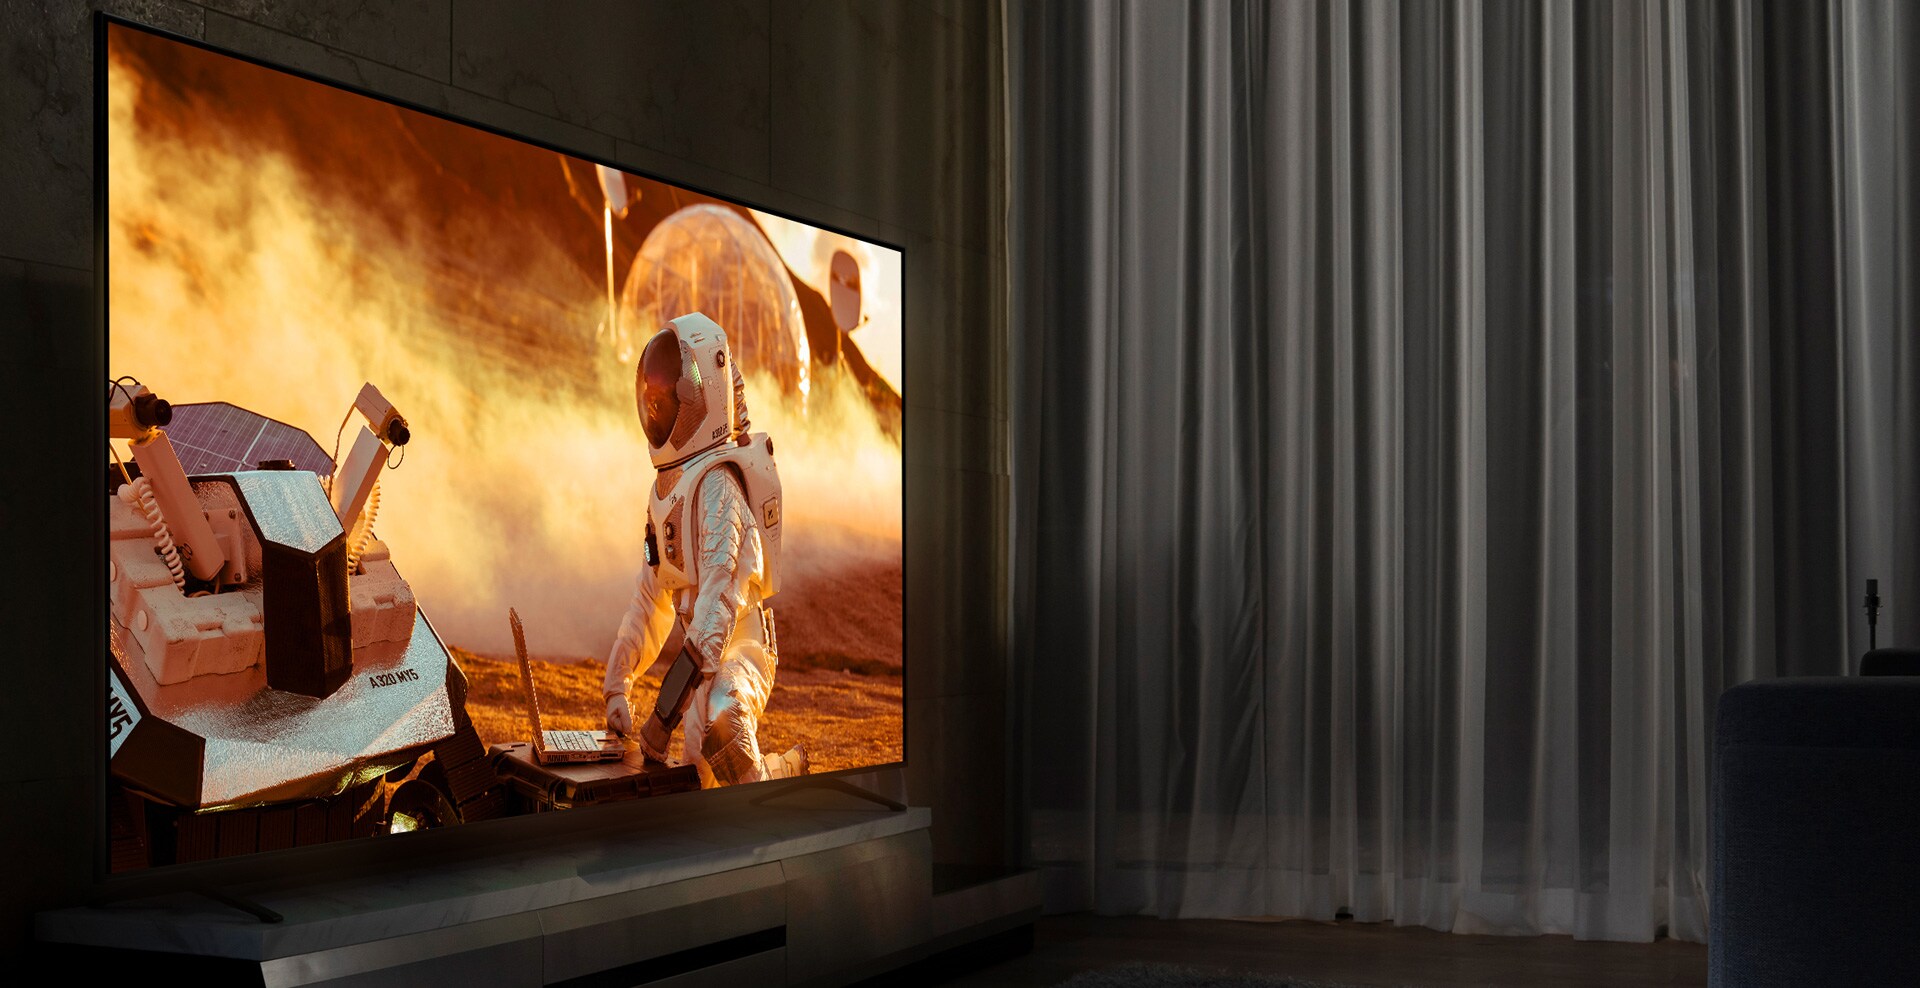 Televizor NanoCell u tamnoj dnevnoj sobi. Na zaslonu je prikazana scena iz filma. Ispod toga prikazano je kako tehnologija NanoCell unaprjeđuje kvalitetu slike.